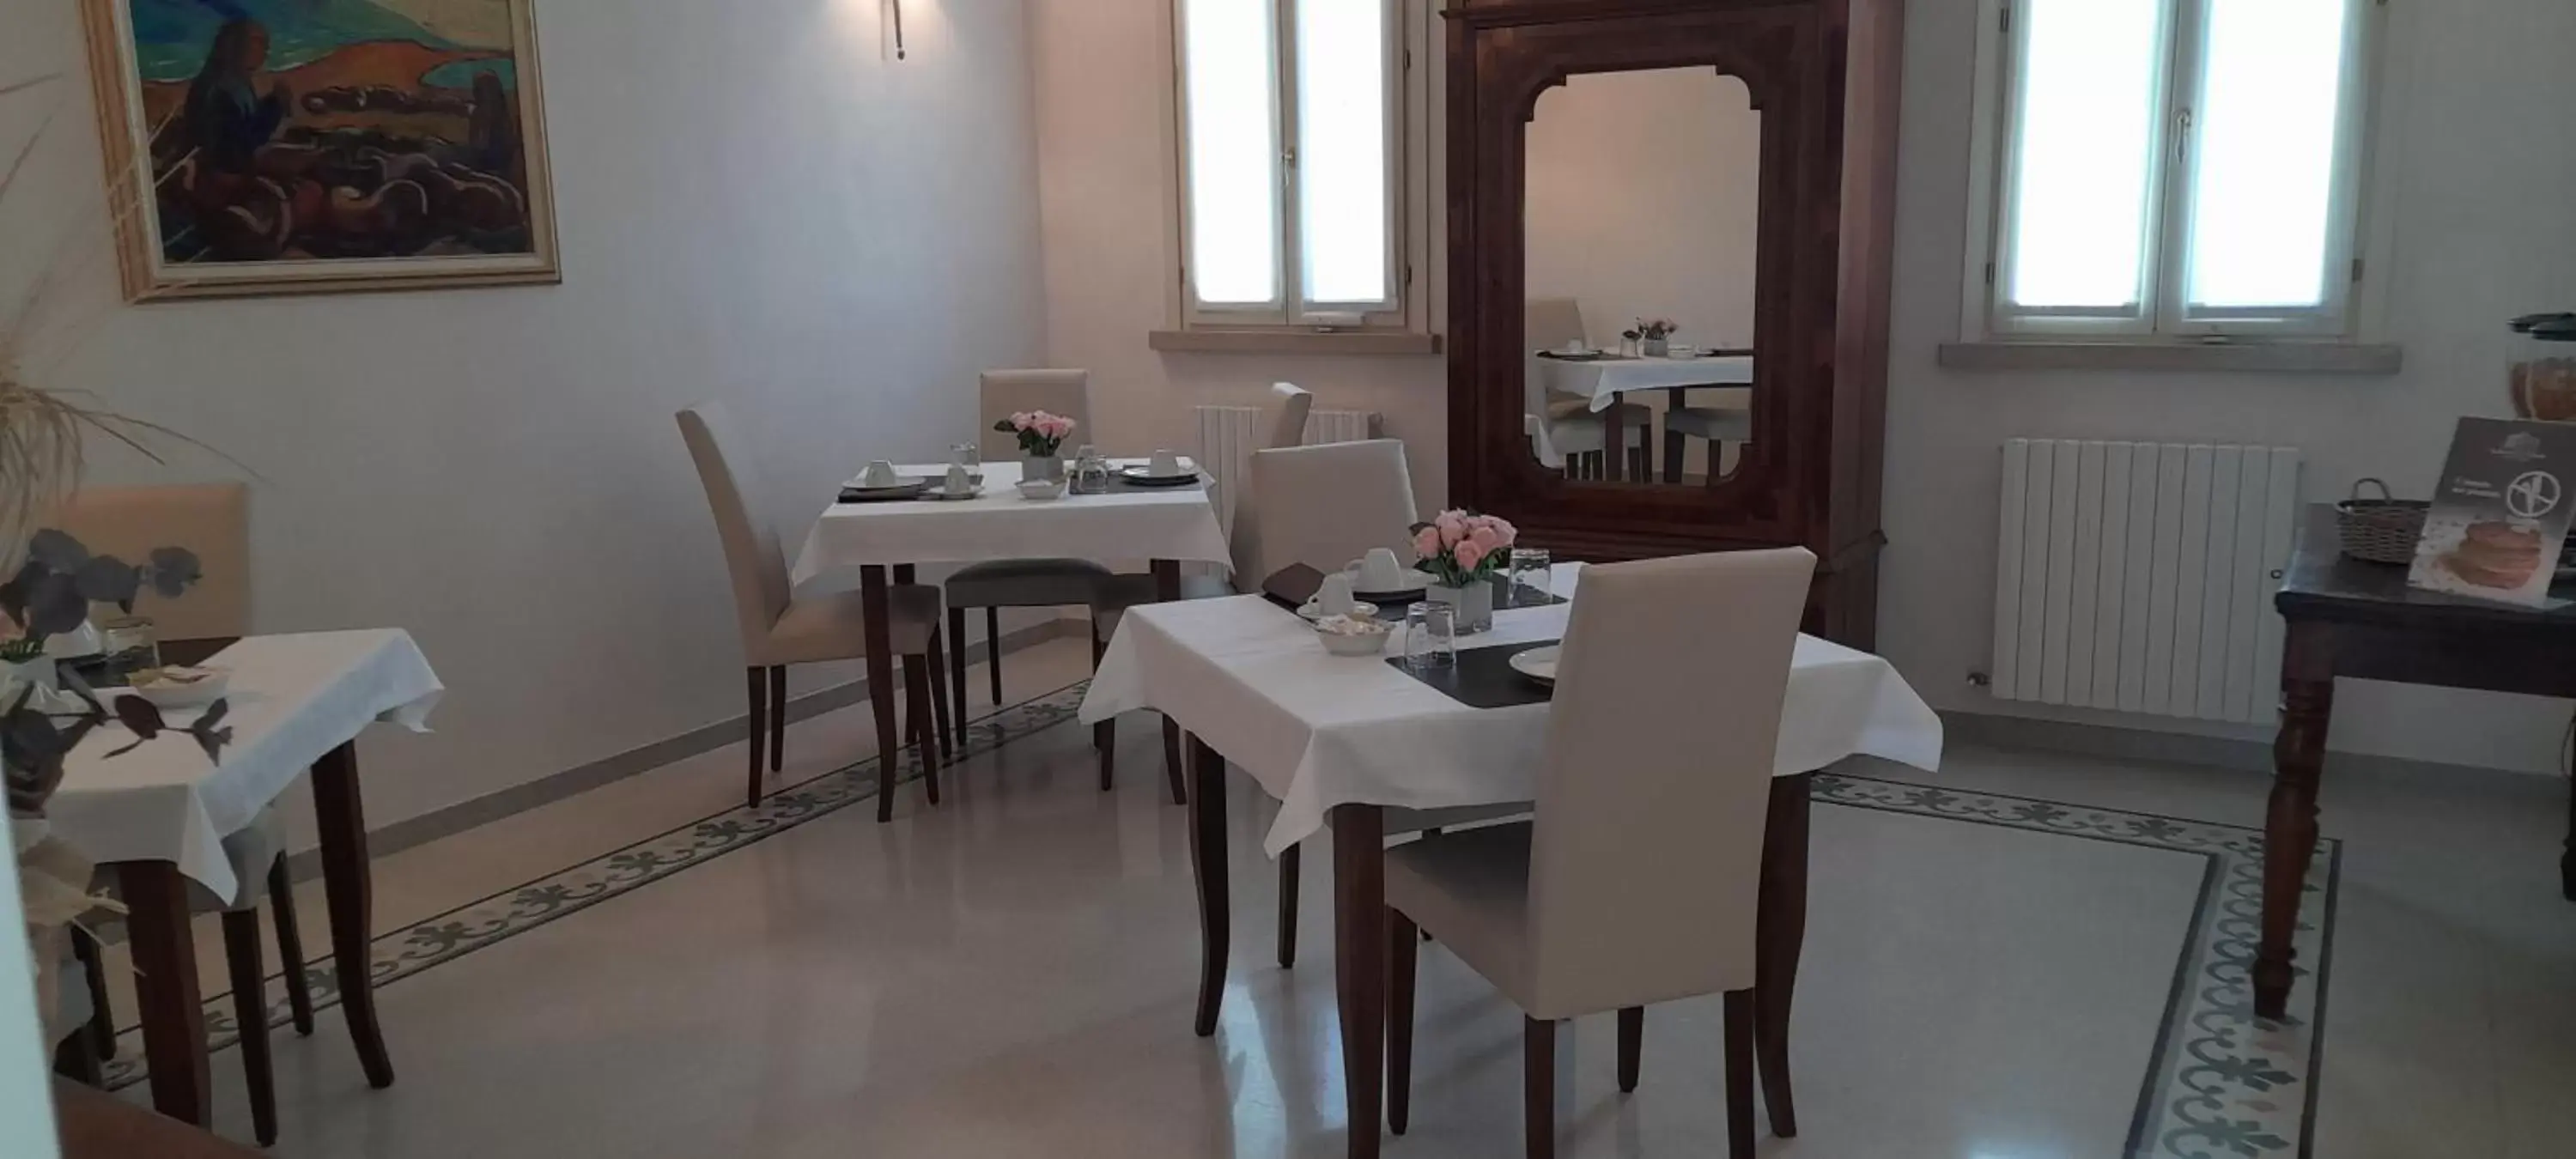 Breakfast, Restaurant/Places to Eat in B&B Residence il Ciliegio , Via Villa Superiore 93 Luzzara